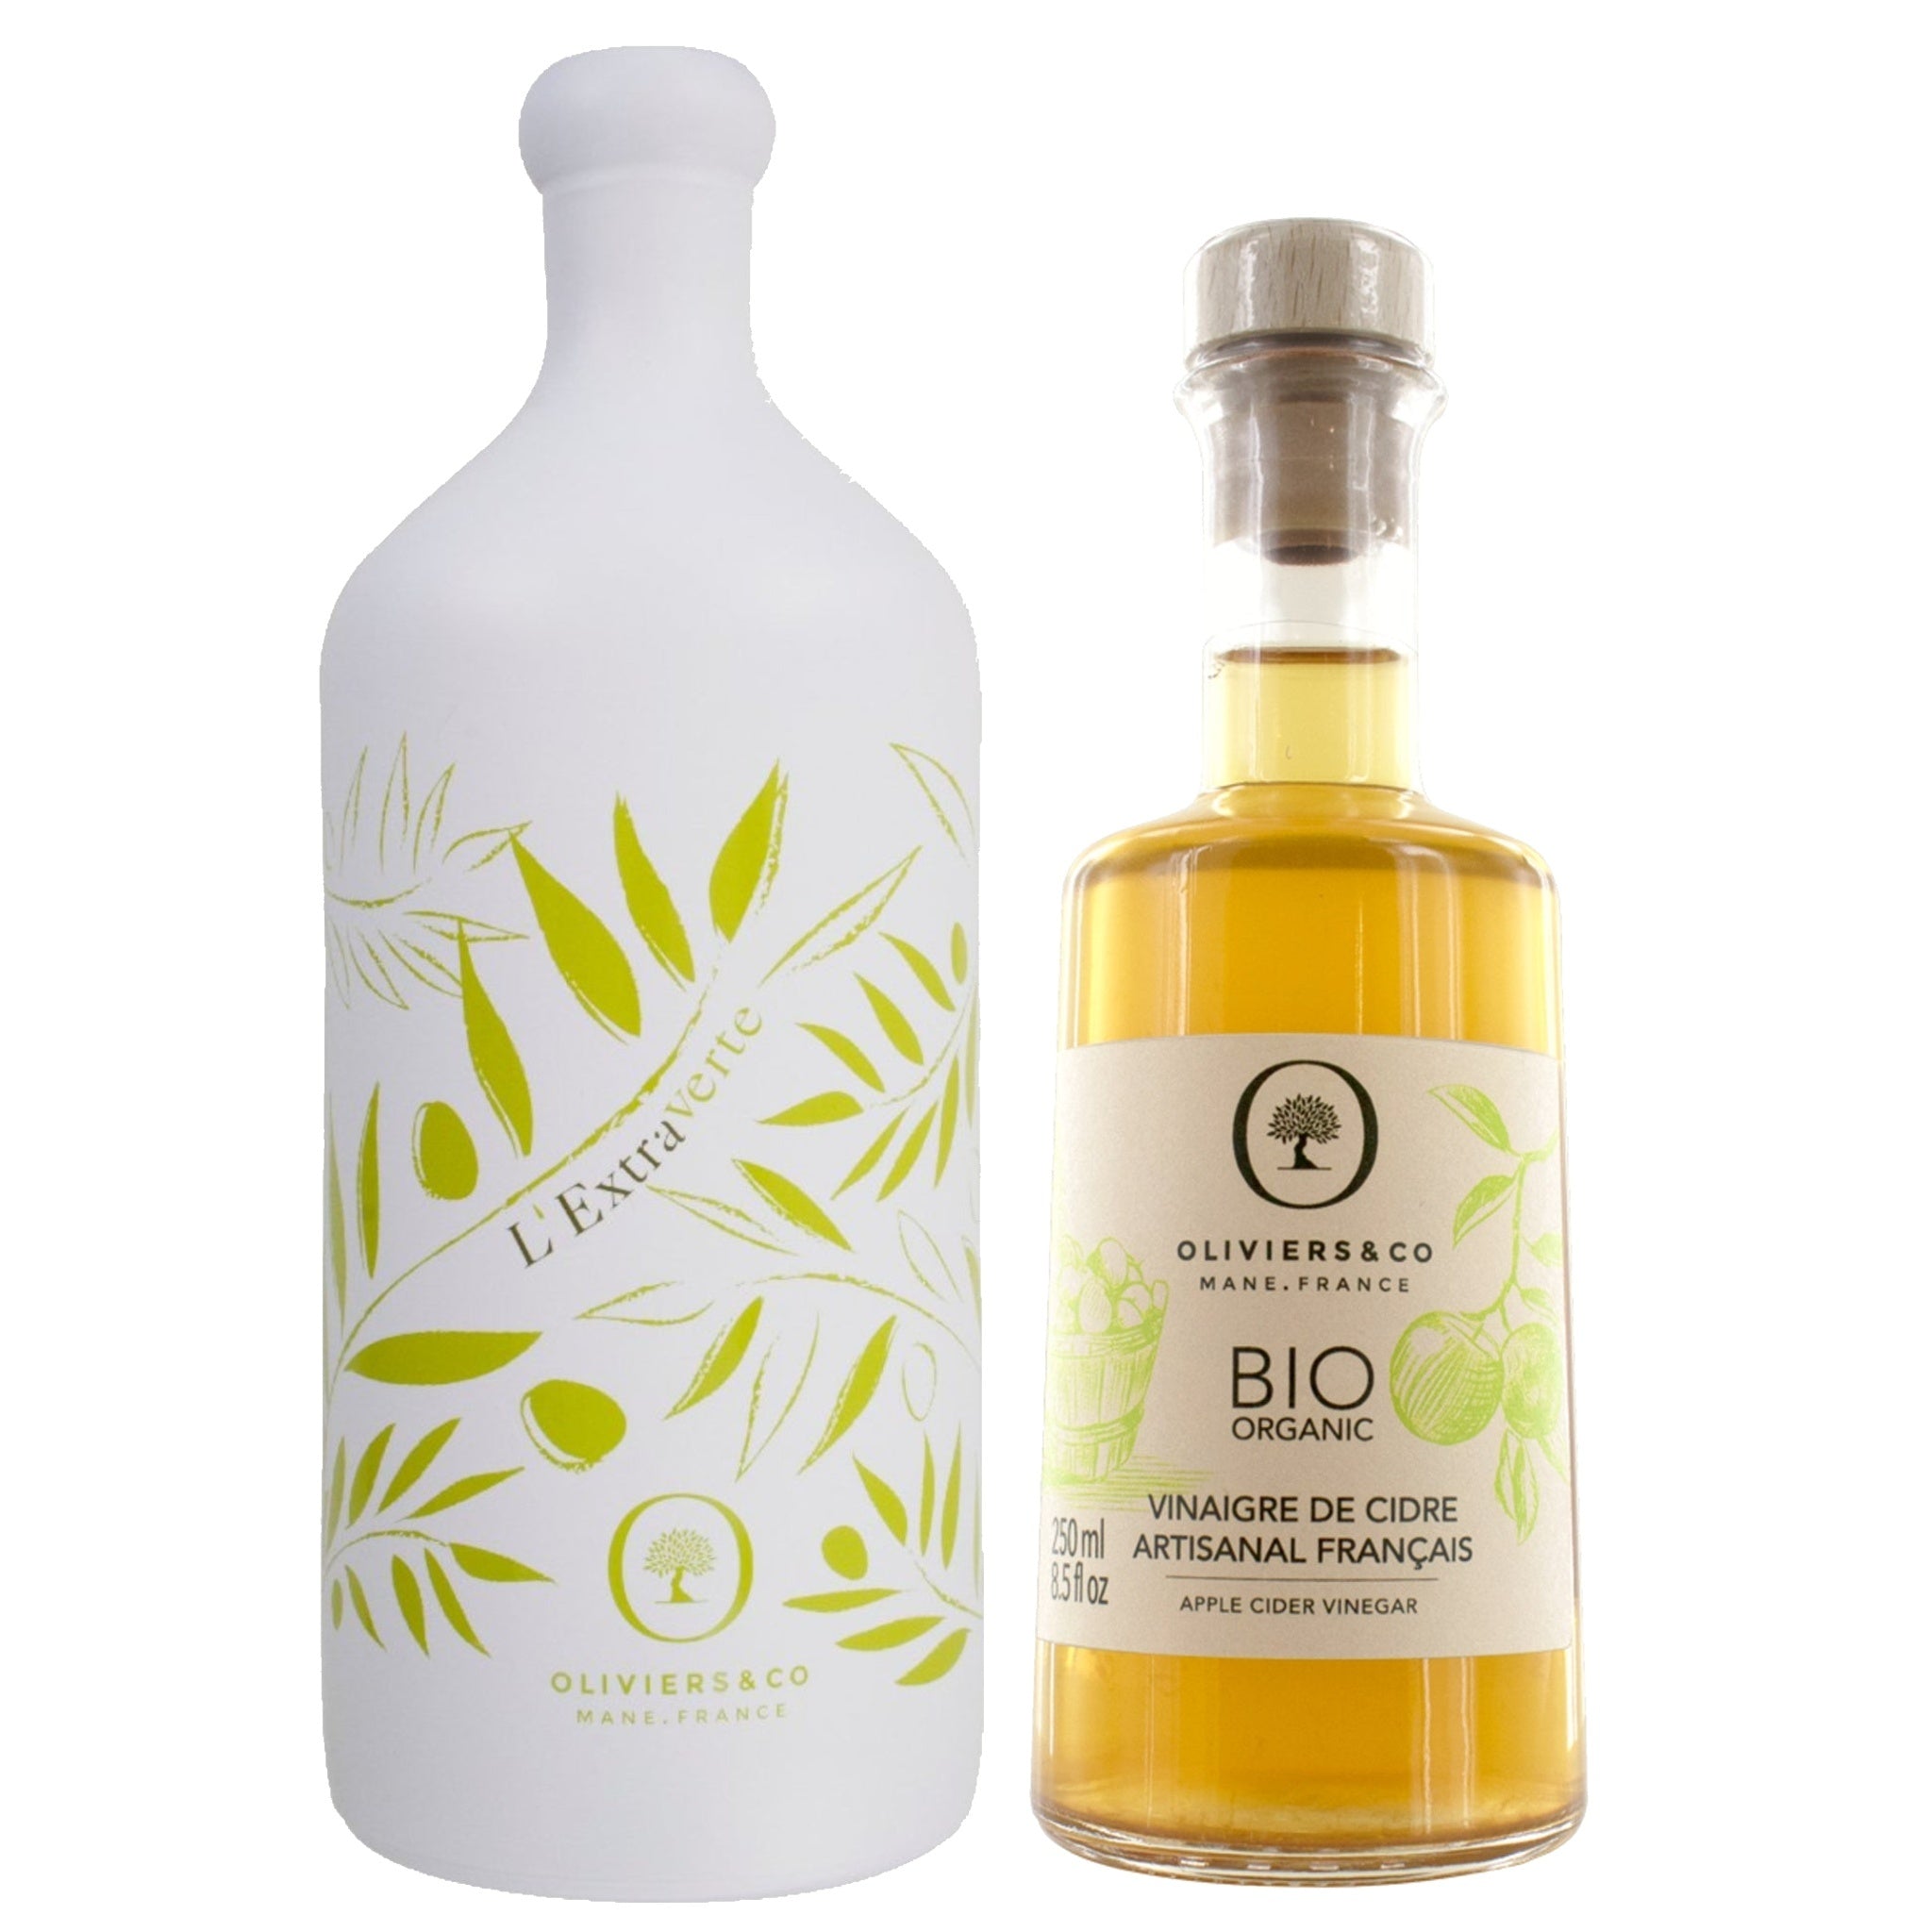 Olie & eddikesæt med L'Extraverte olivenolie og fransk æblecidereddike fra Oliviers & Co